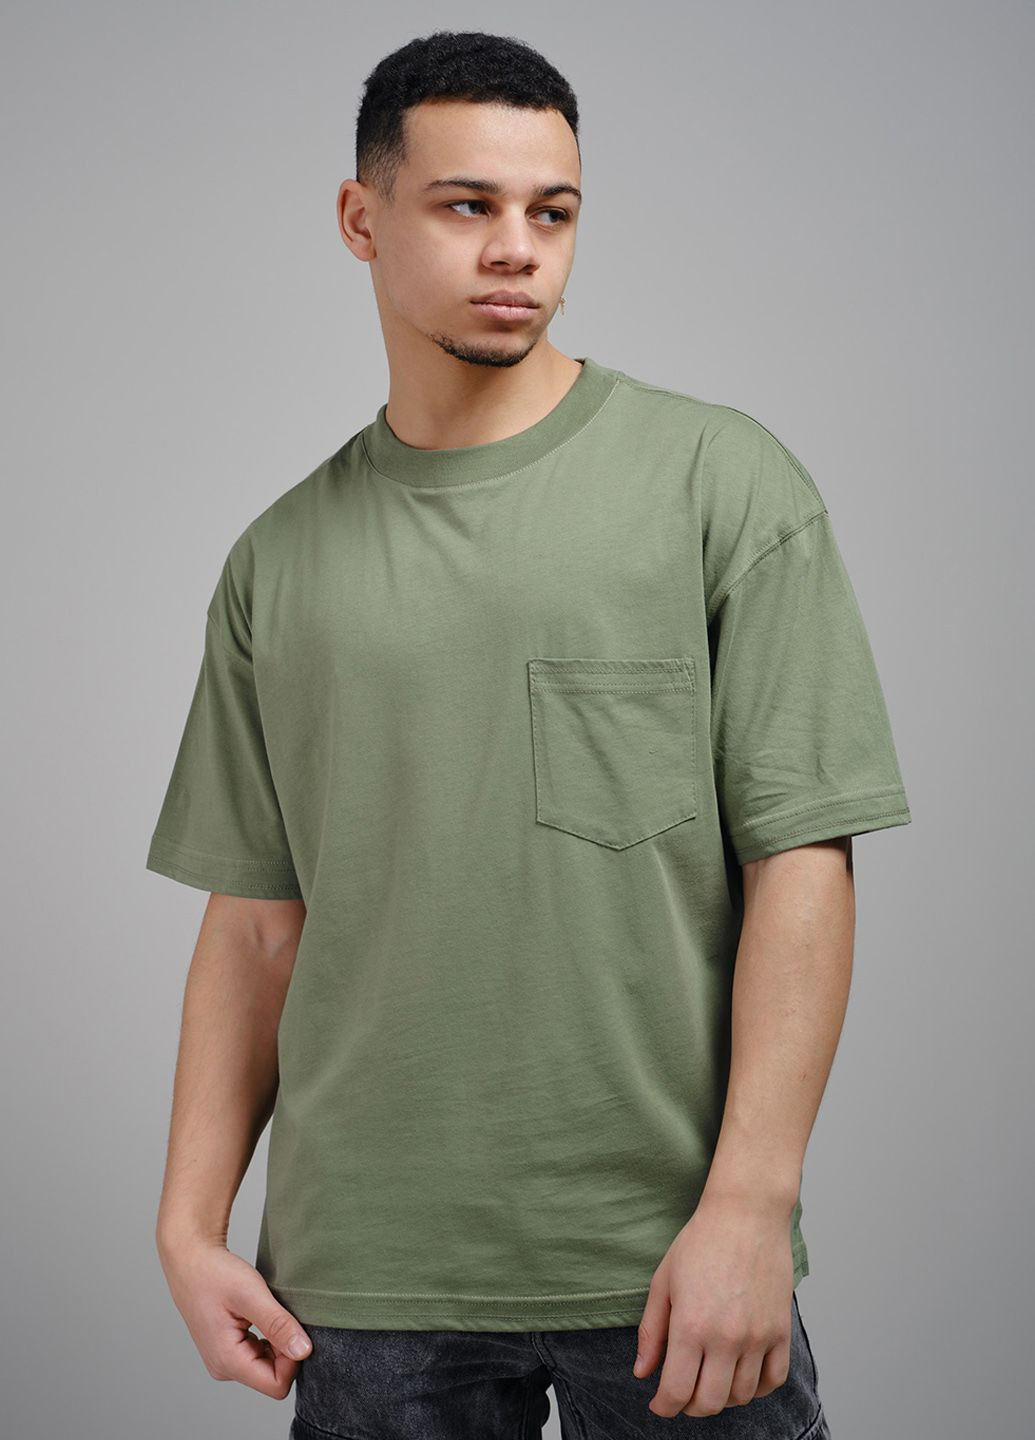 Зеленая футболка мужская оливковая 103111 Power